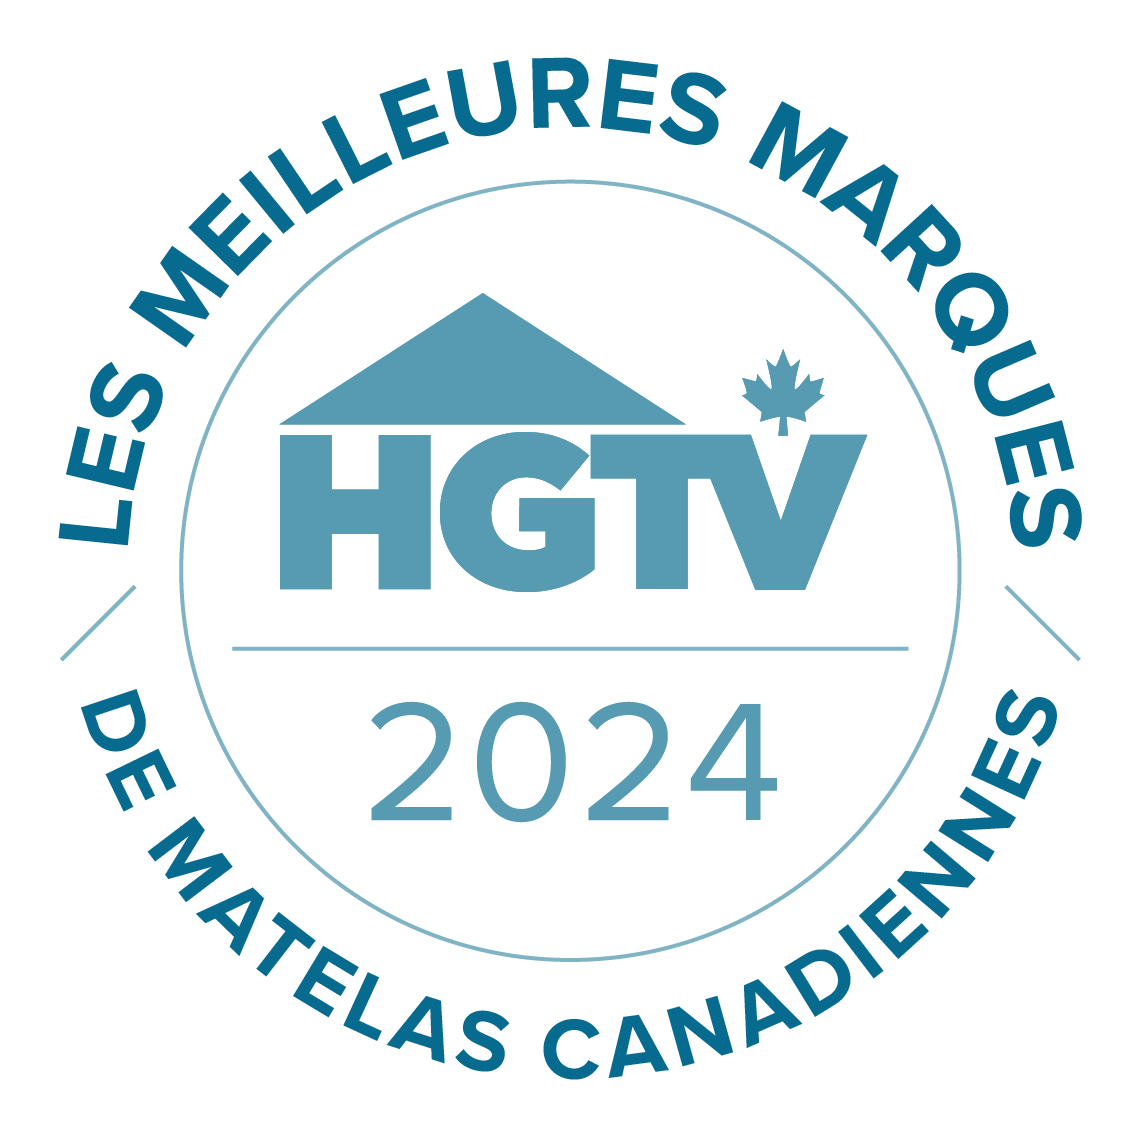 Les meilleures marques de matelas canadiennes - 2024 - HGTV